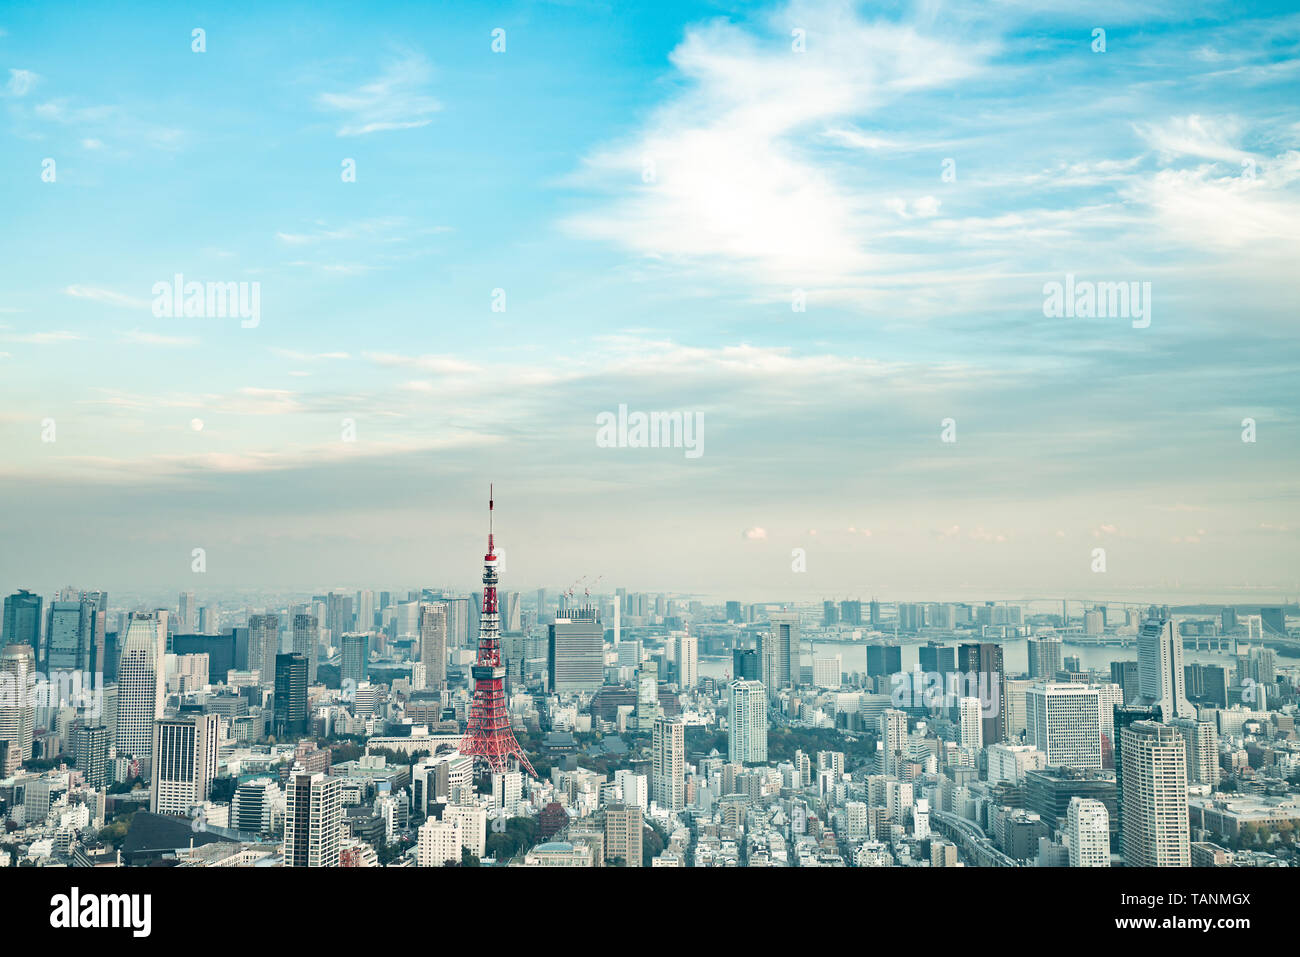 La Tour de Tokyo, Japon - communication et tour d'observation. C'était la plus haute structure artificielle au Japon jusqu'en 2010 lorsque le nouveau Tokyo Skytree becam Banque D'Images